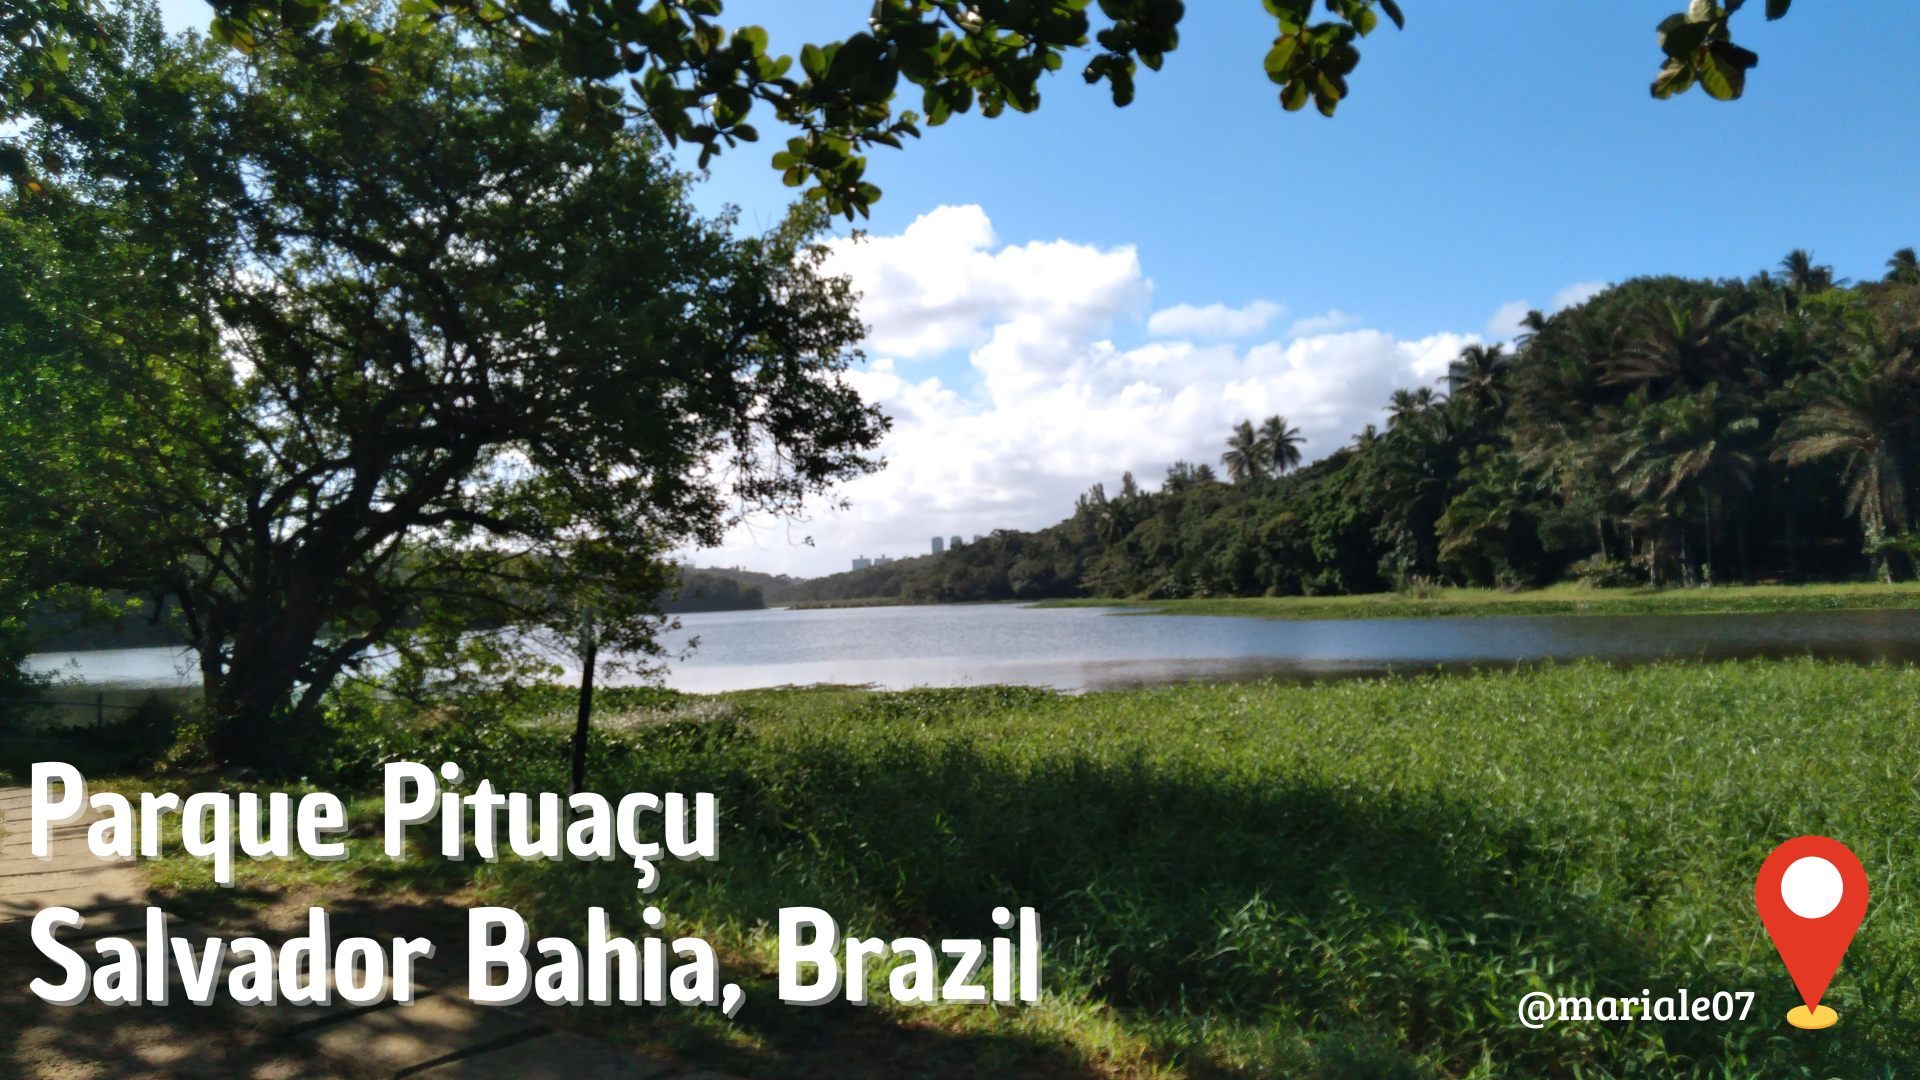 Parque Pituaçu Salvador Bahia, Brazil.png